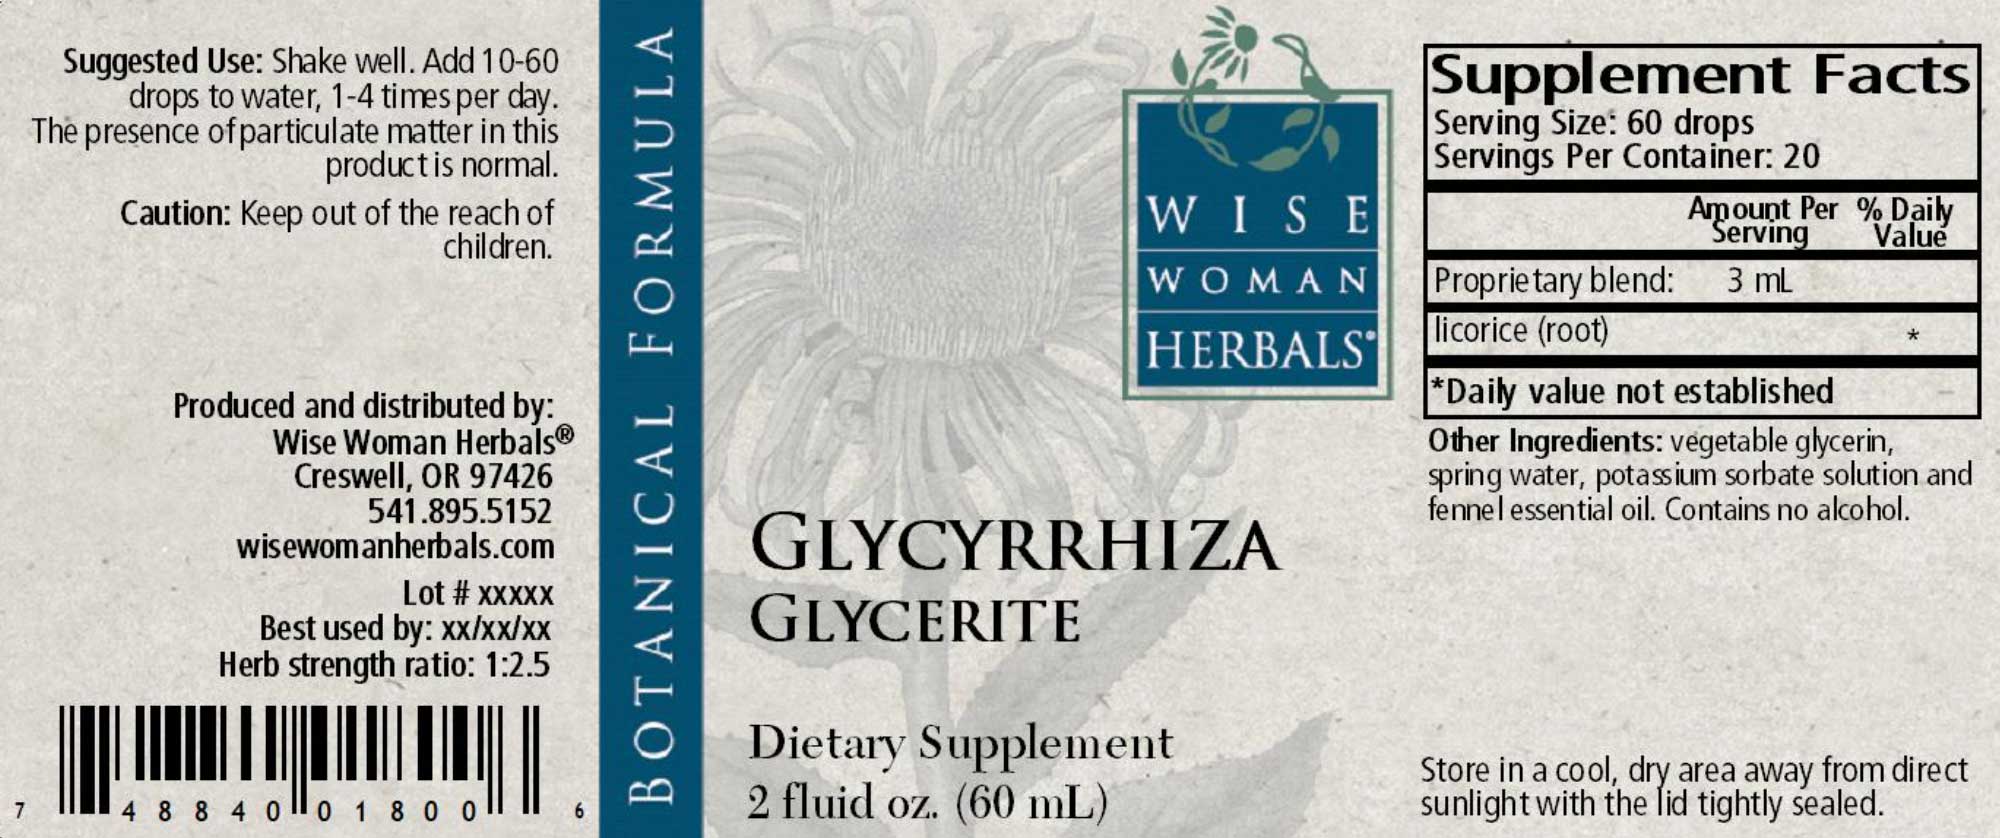 Wise Woman Herbals Glycyrrhiza Glycerite Label